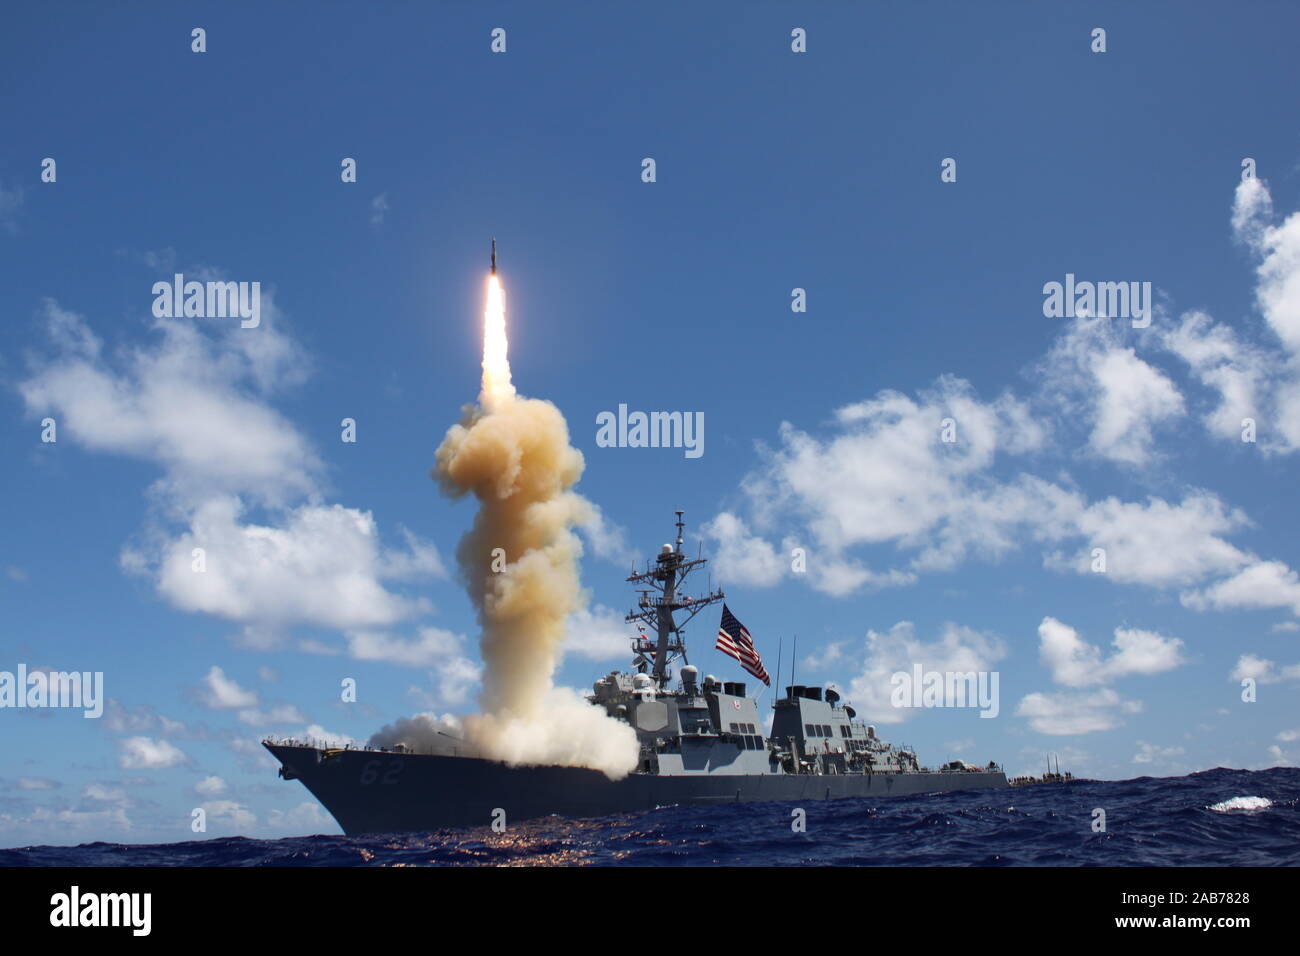 Oceano Pacifico (ott. 25, 2012) le visite-missile destroyer USS Fitzgerald (DDG 62) lancia un missile Standard-3 (SM-3) come al di là di un giunto di missili balistici esercizio di difesa. Foto Stock